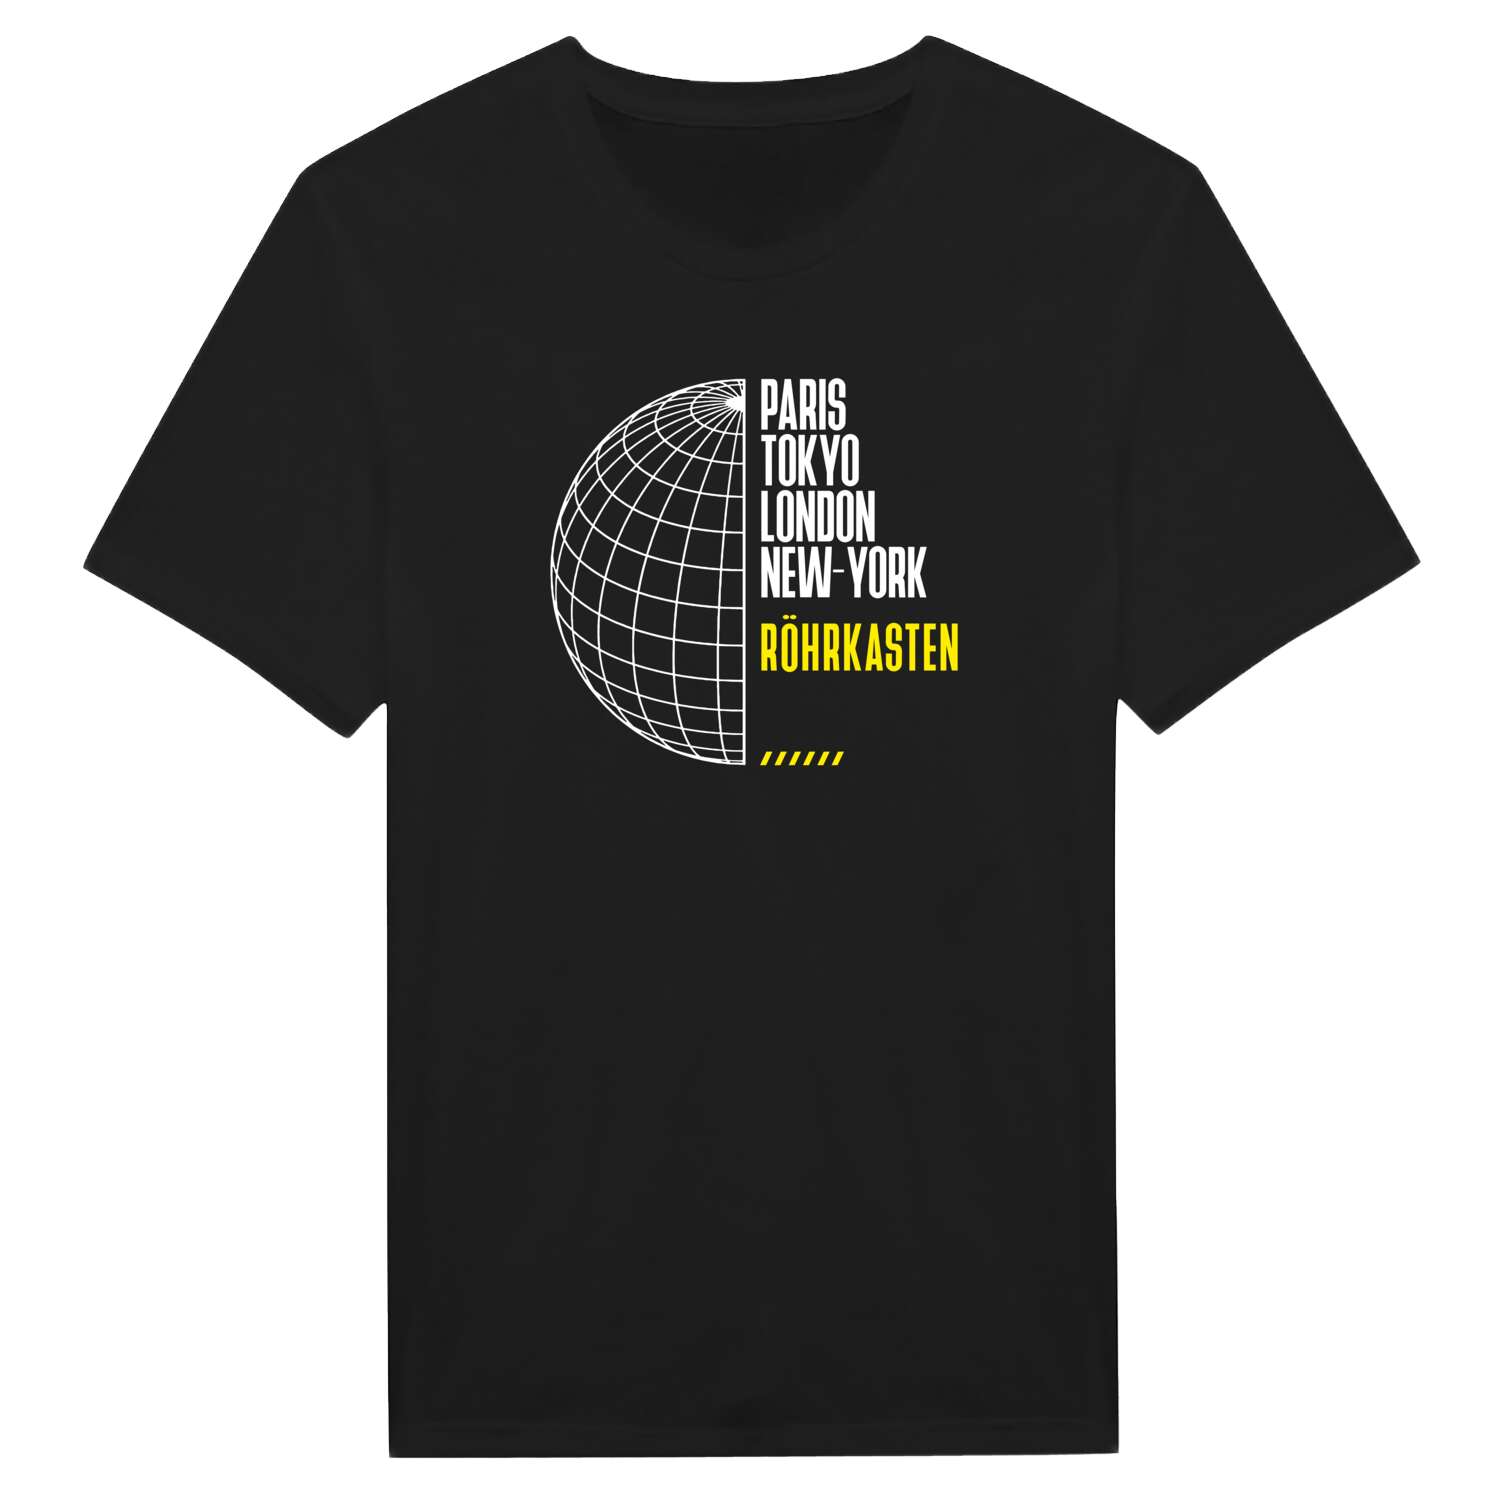 Röhrkasten T-Shirt »Paris Tokyo London«